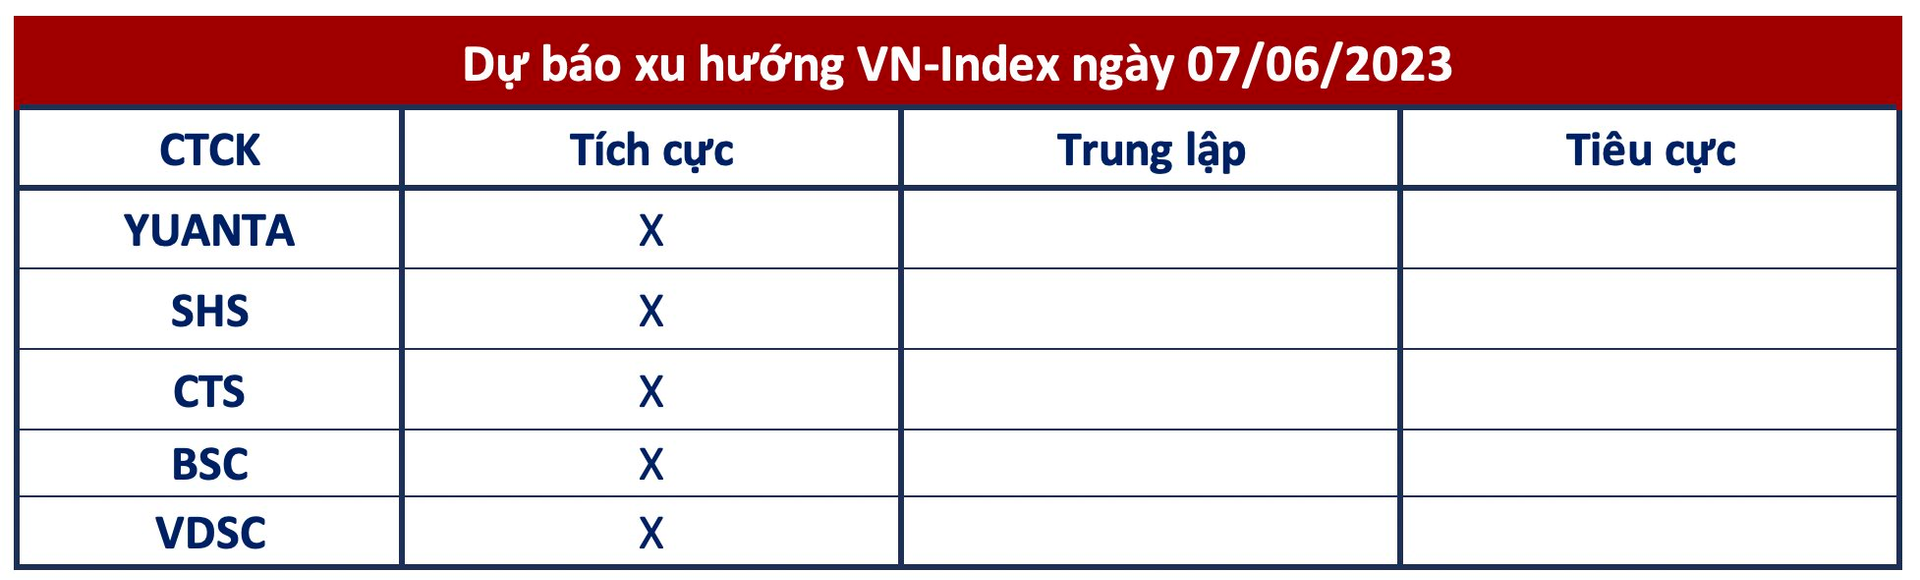 Góc nhìn CTCK: VN-Index hướng tới chinh phục mốc 1.125 điểm, có thể tận dụng nhịp chỉnh để mua thêm - Ảnh 1.